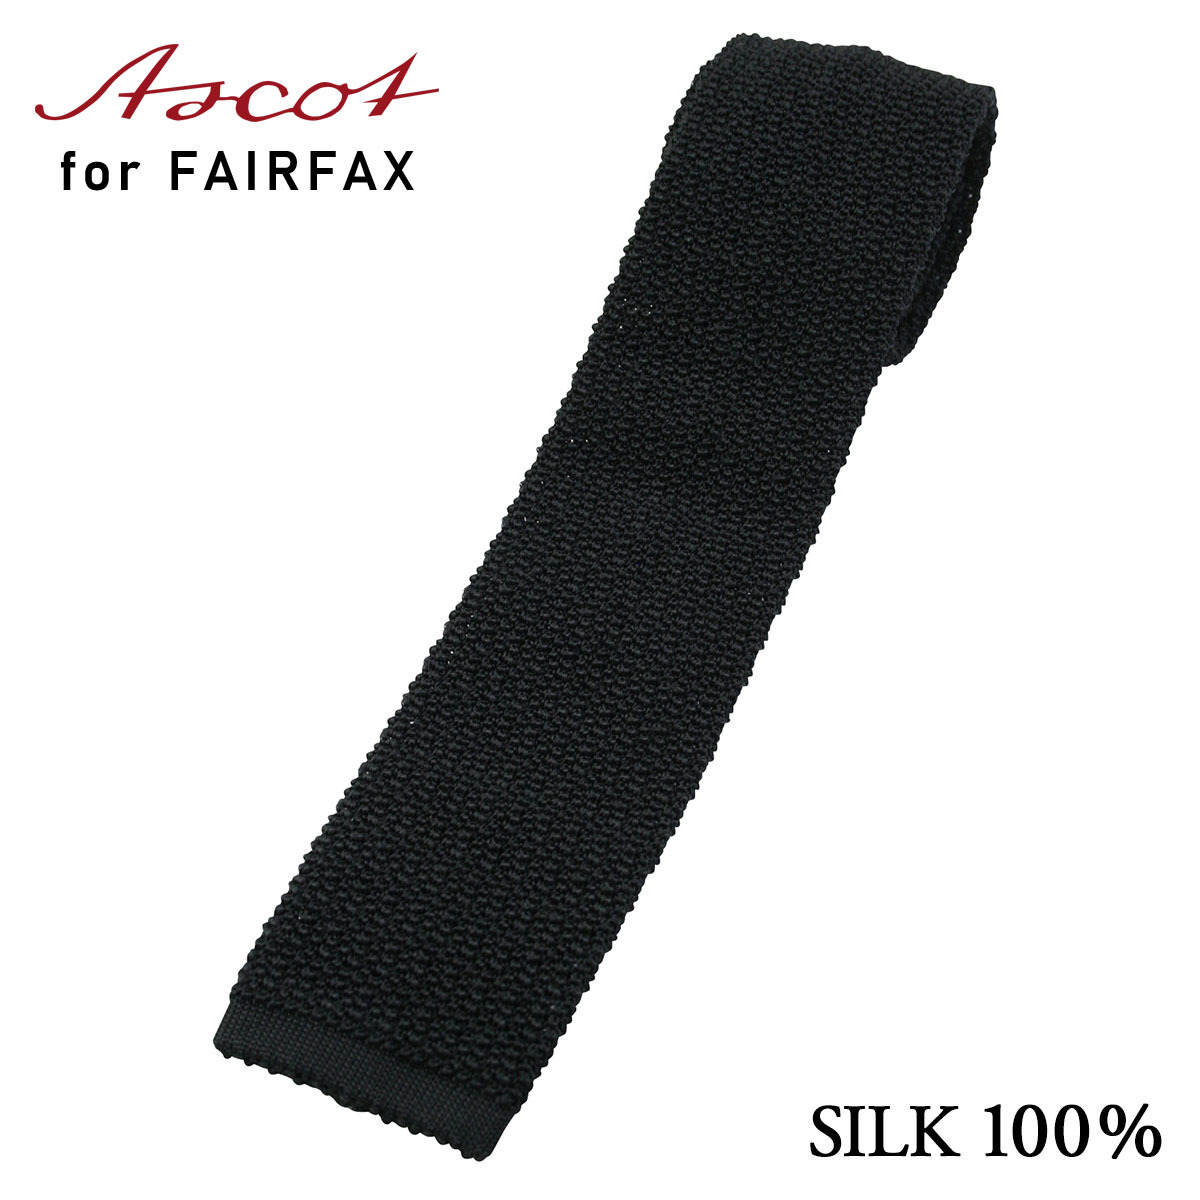  галстук бизнес бренд feafaksFAIRFAX стоимость доставки * комиссия за наложенный платеж бесплатный ASCOT черный solid вязаный галстук | праздник . свадьба подарок мужской 